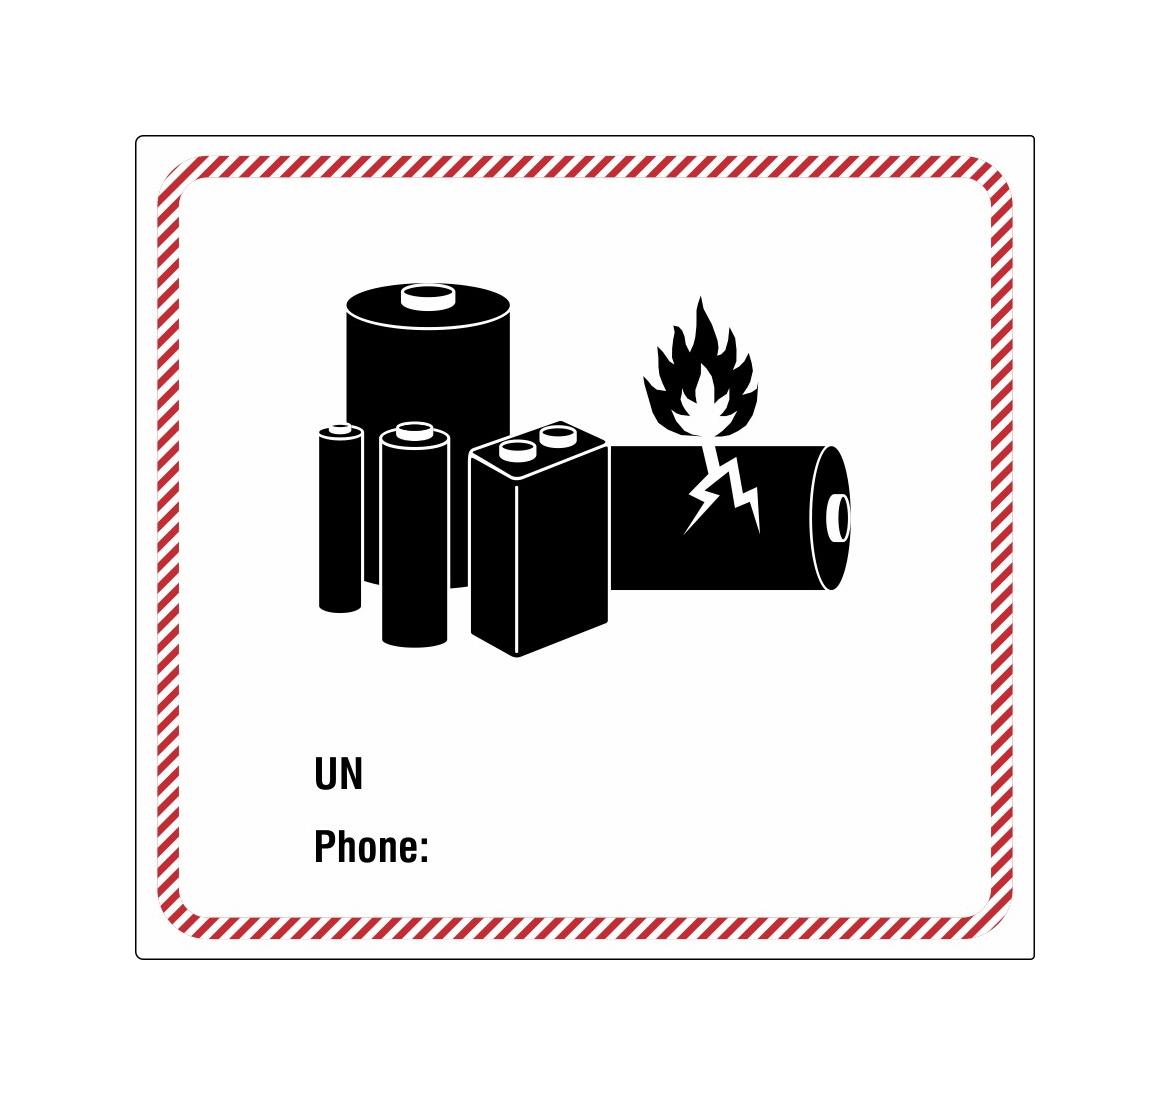 Verpackungsetikett für Lithiumbatterien - zur Selbstbeschriftung (UN, Phone)